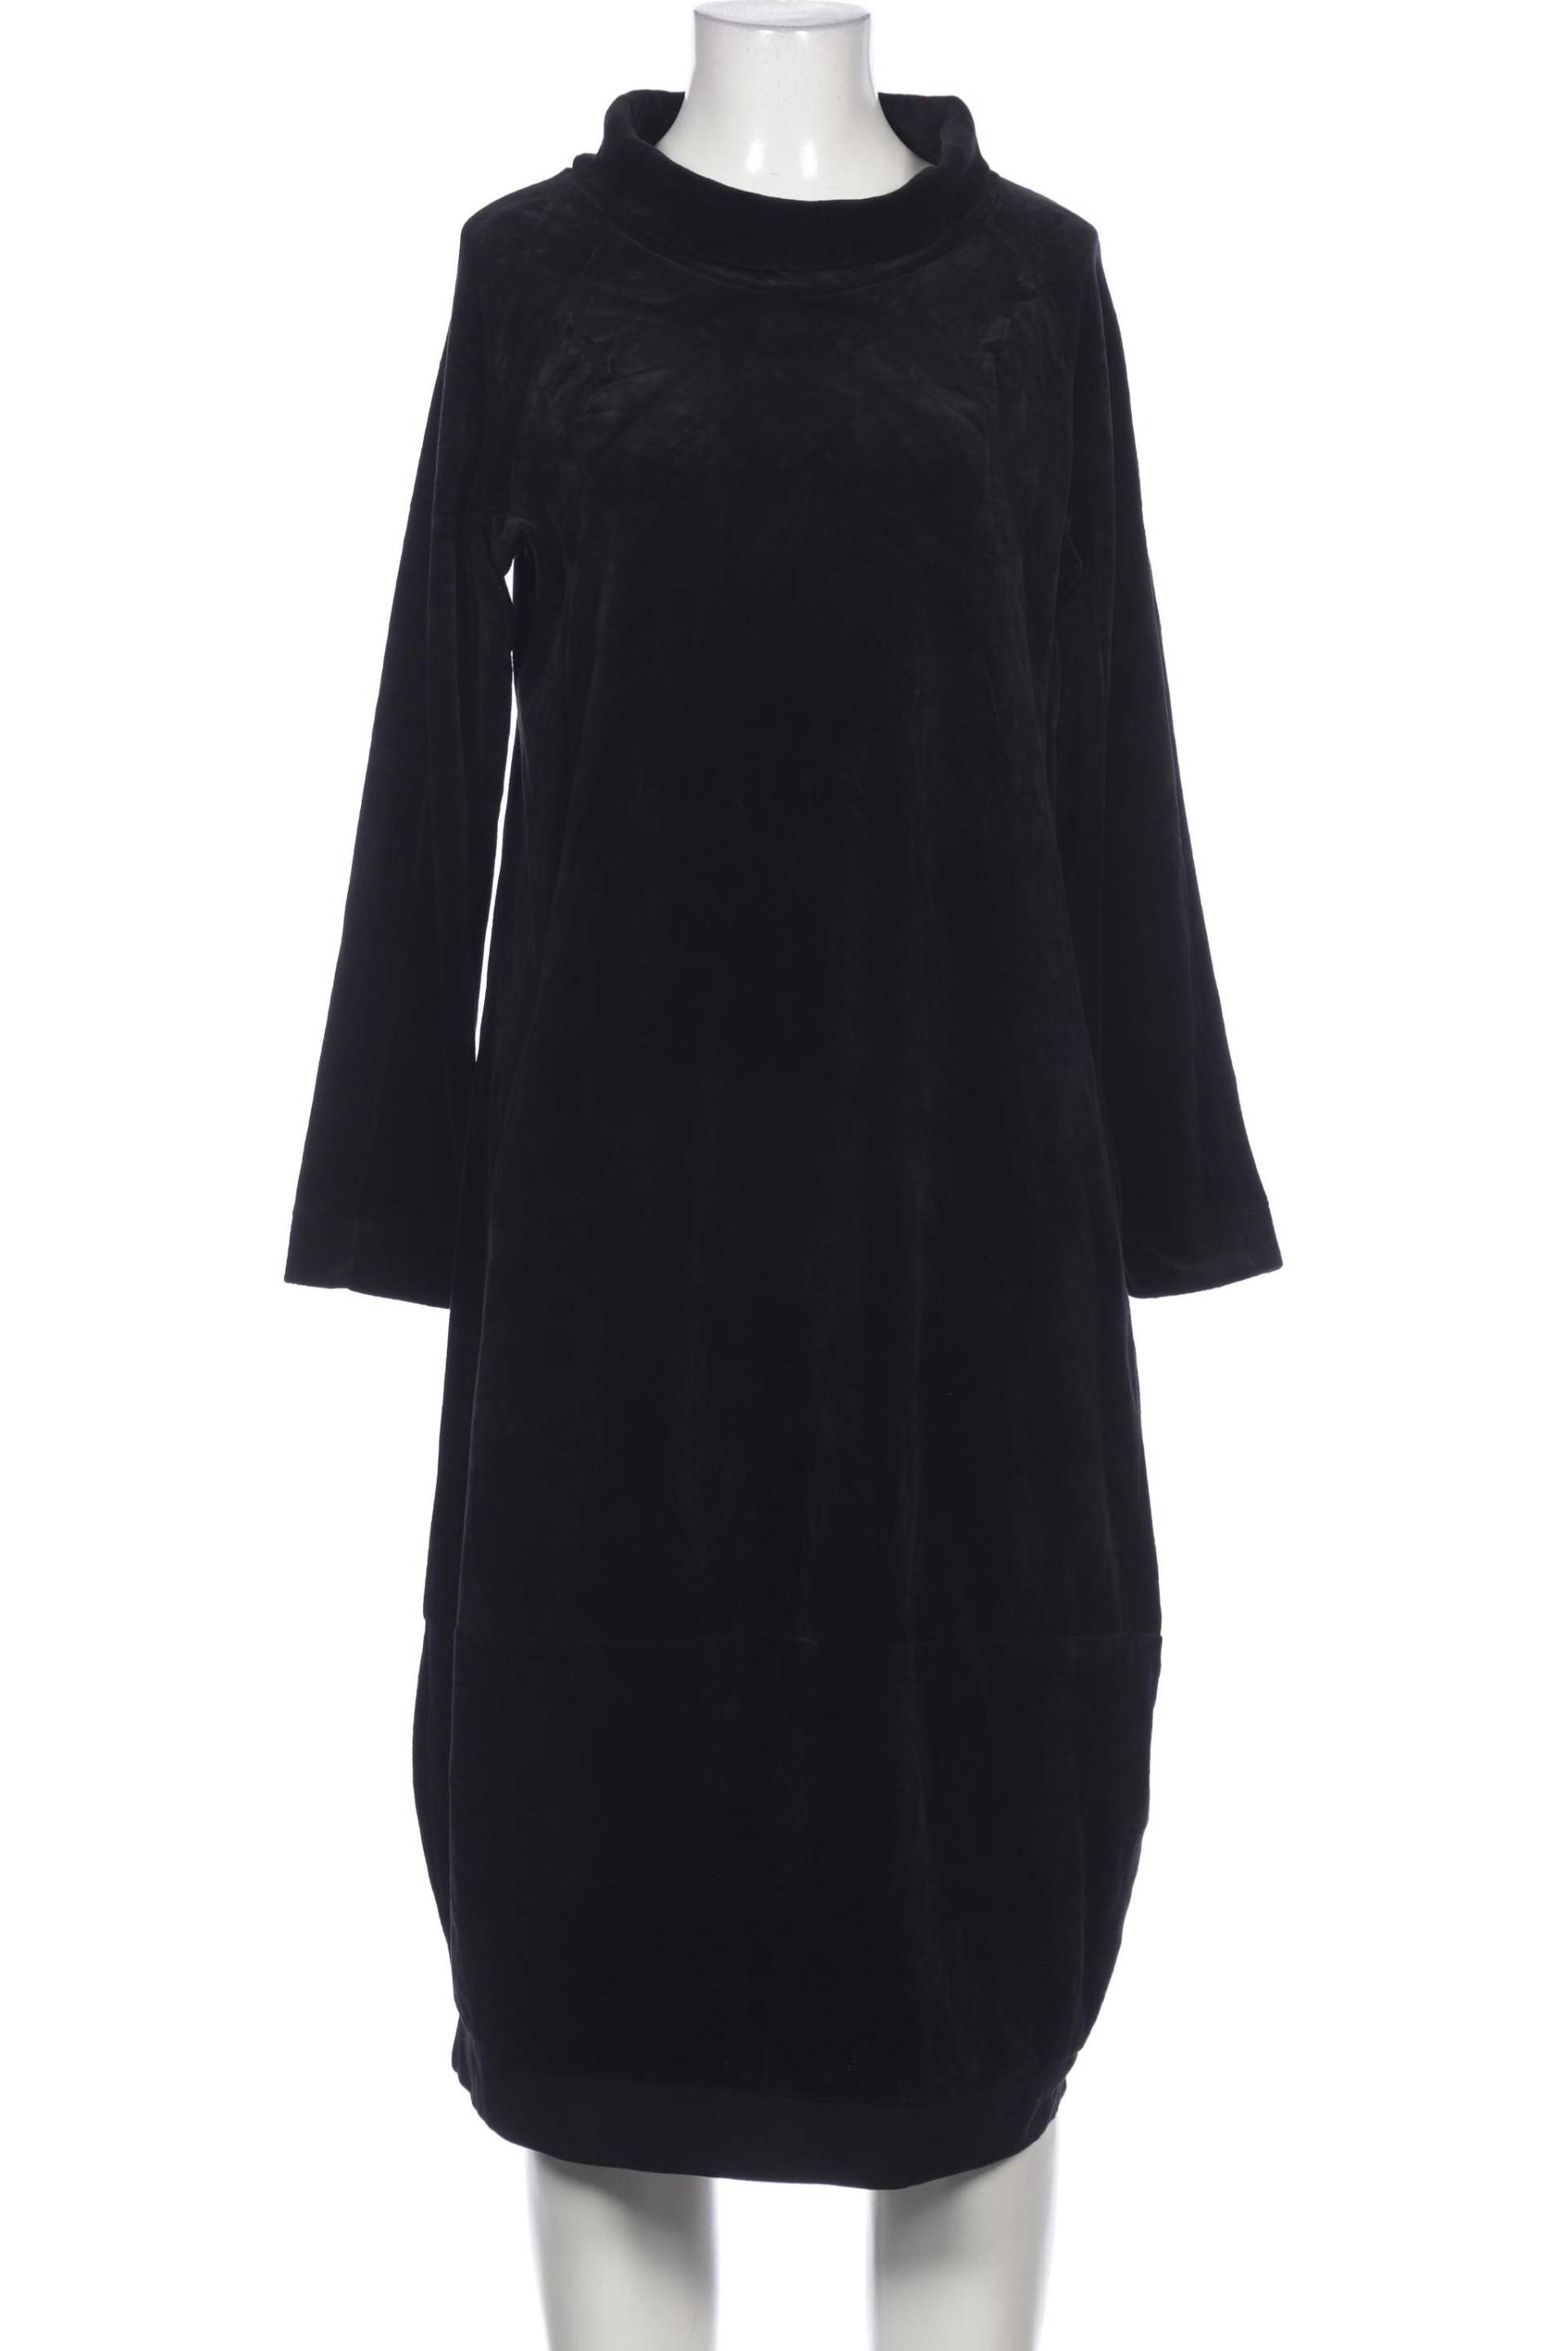 Deerberg Damen Kleid, schwarz, Gr. 36 von Deerberg